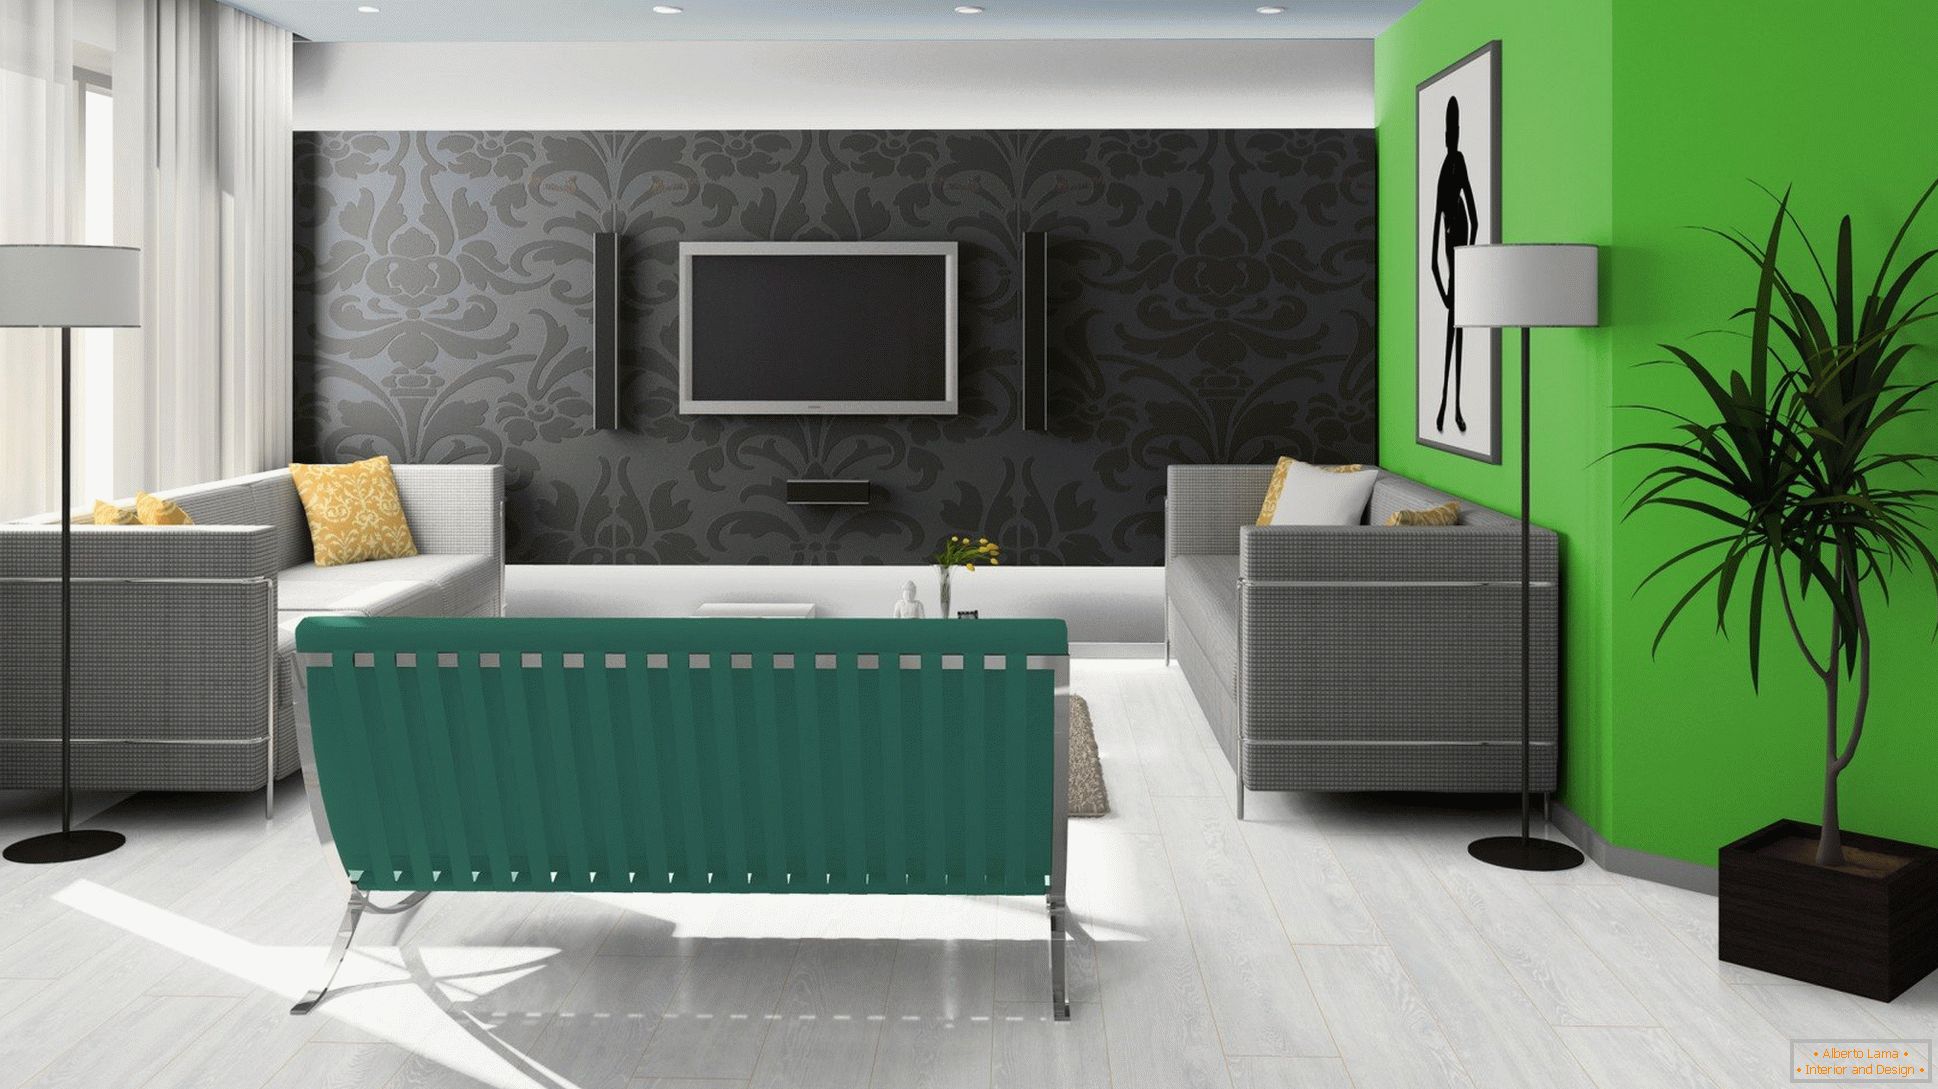 Negro, verde y blanco en el diseño de la sala de estar